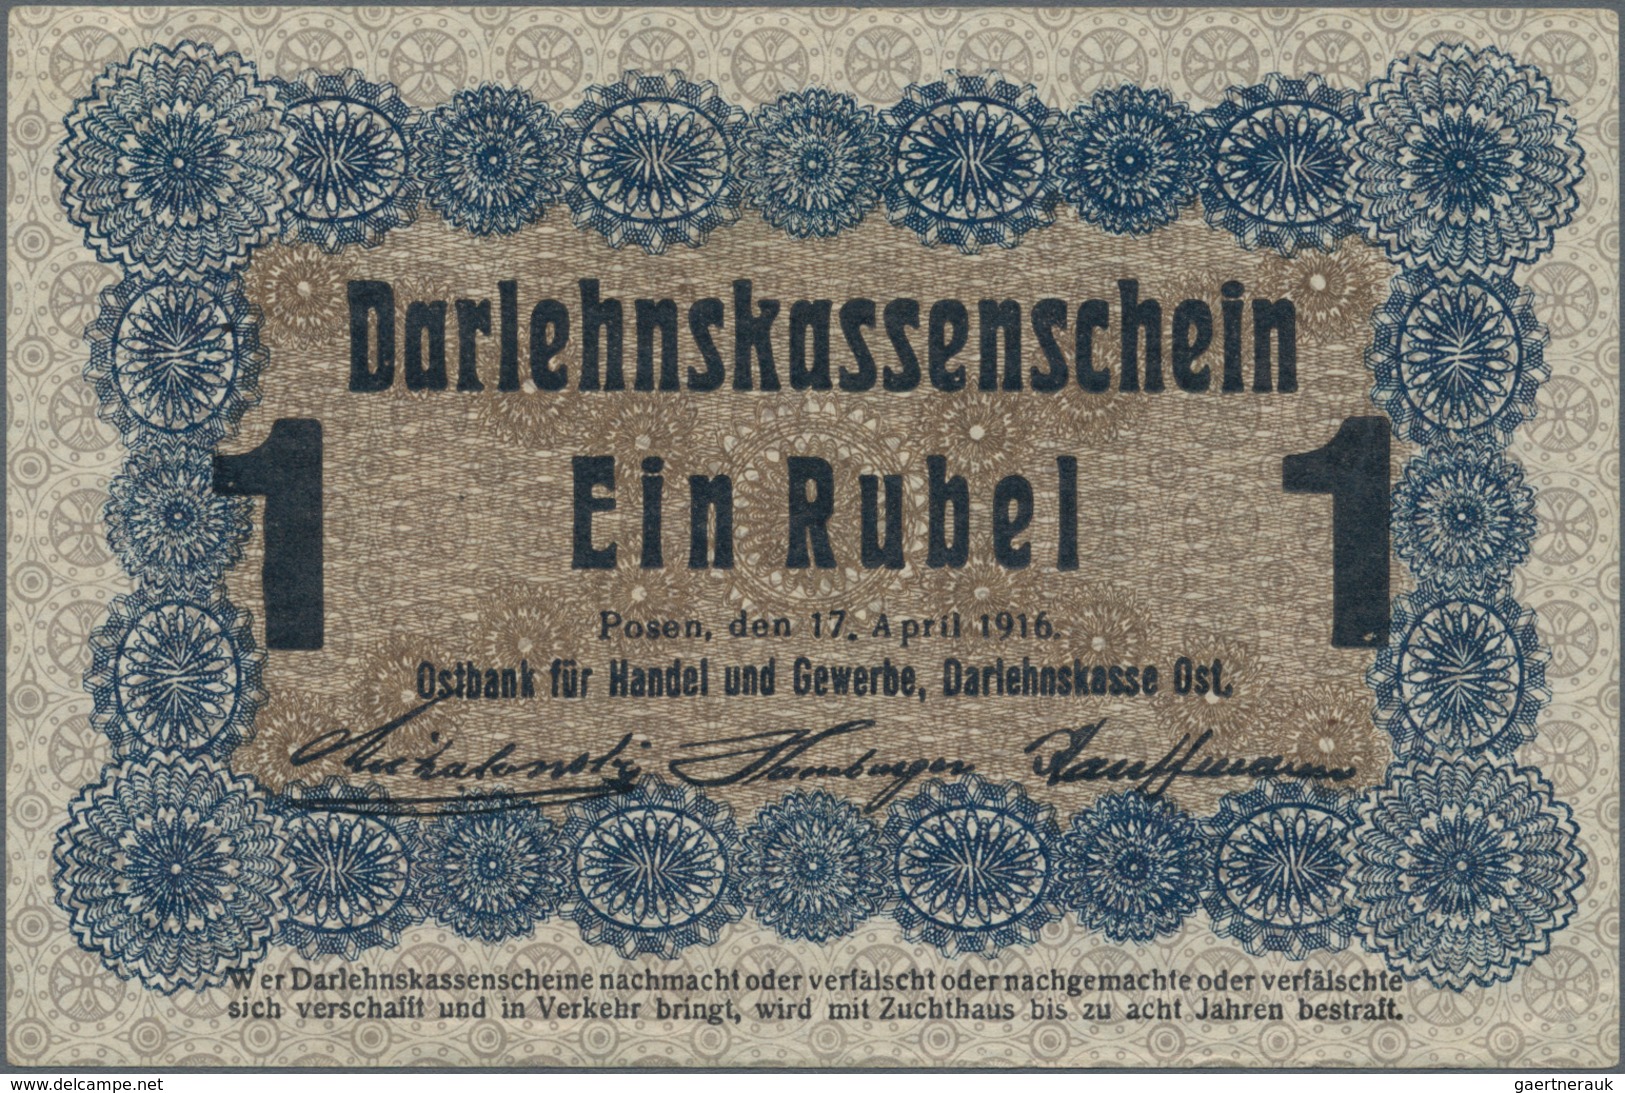 Deutschland - Nebengebiete Deutsches Reich: Darlehenskasse Ost – Posen, Lot mit 16 Banknoten der Ser